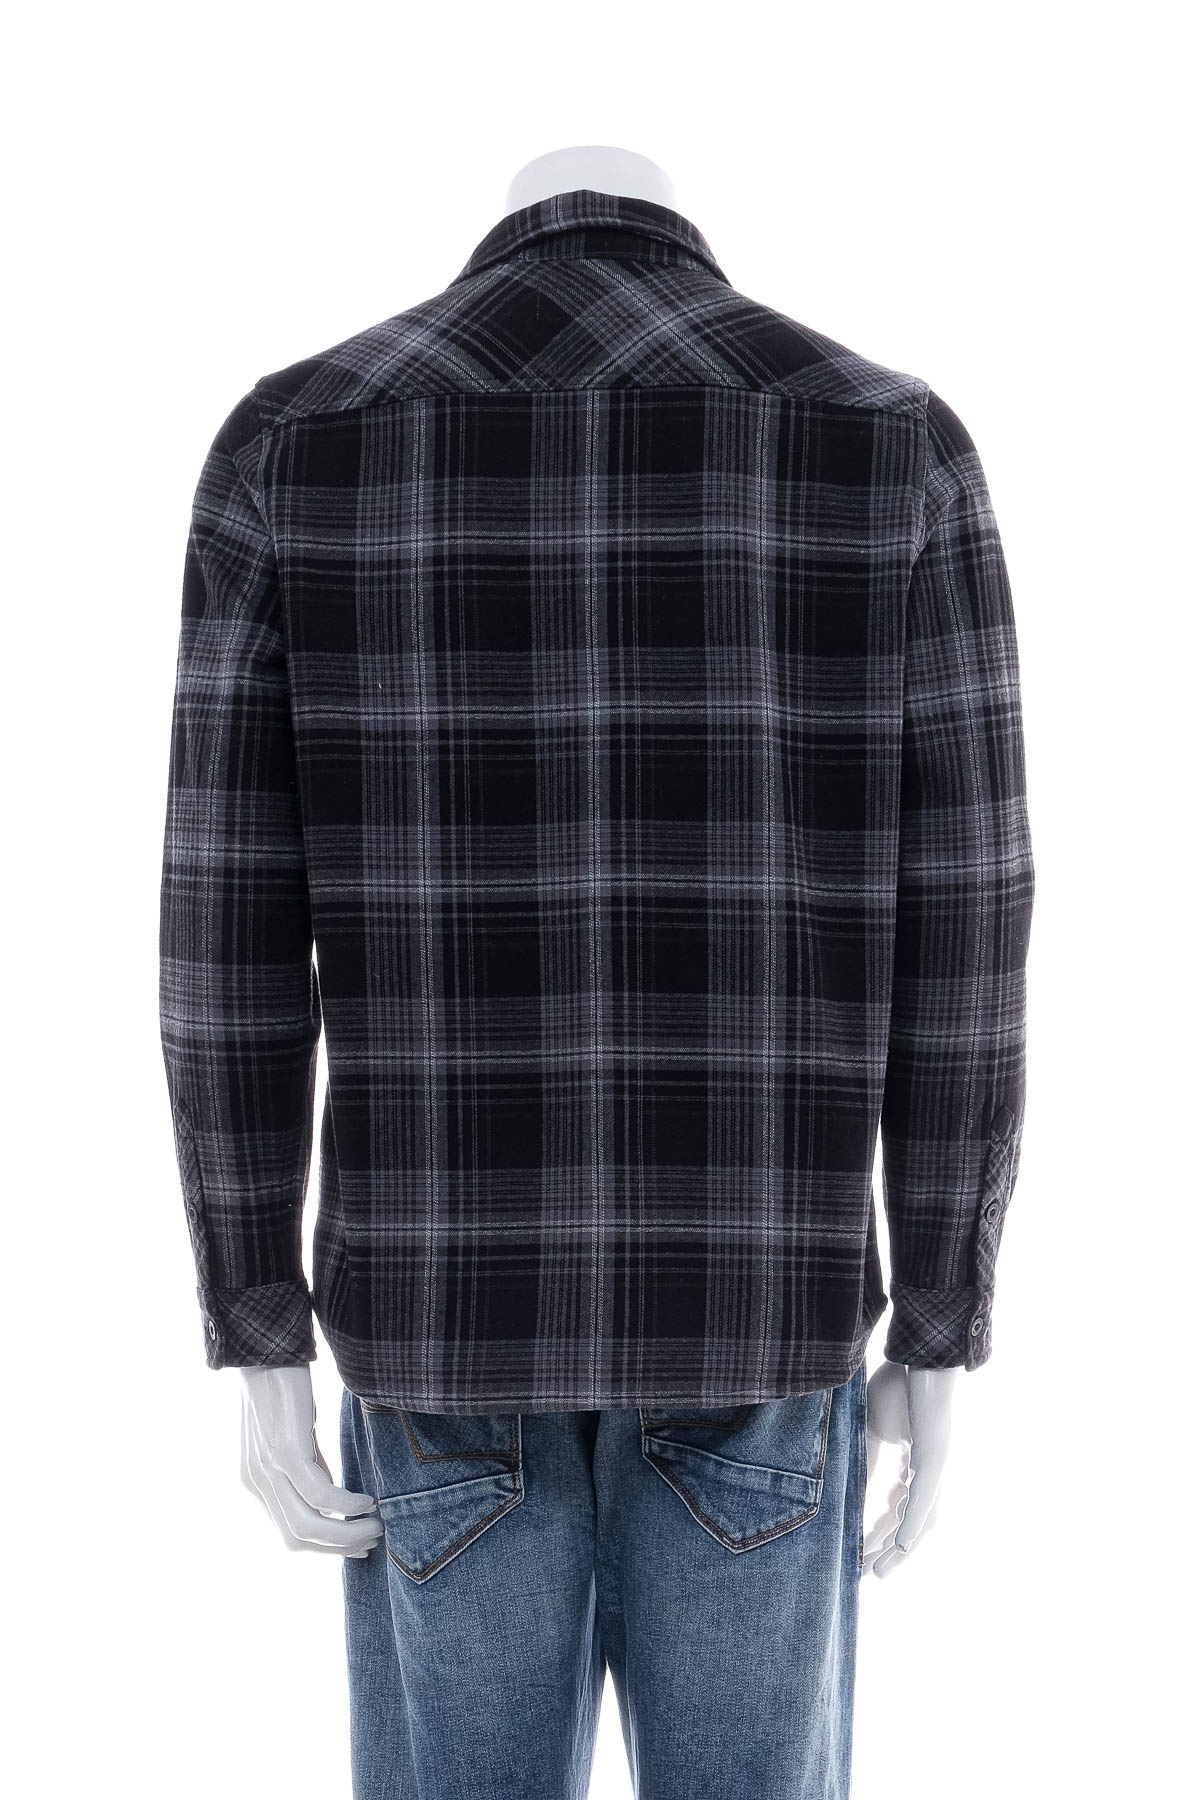 Ανδρικό πουκάμισο - BC CLOTHING co. - 1